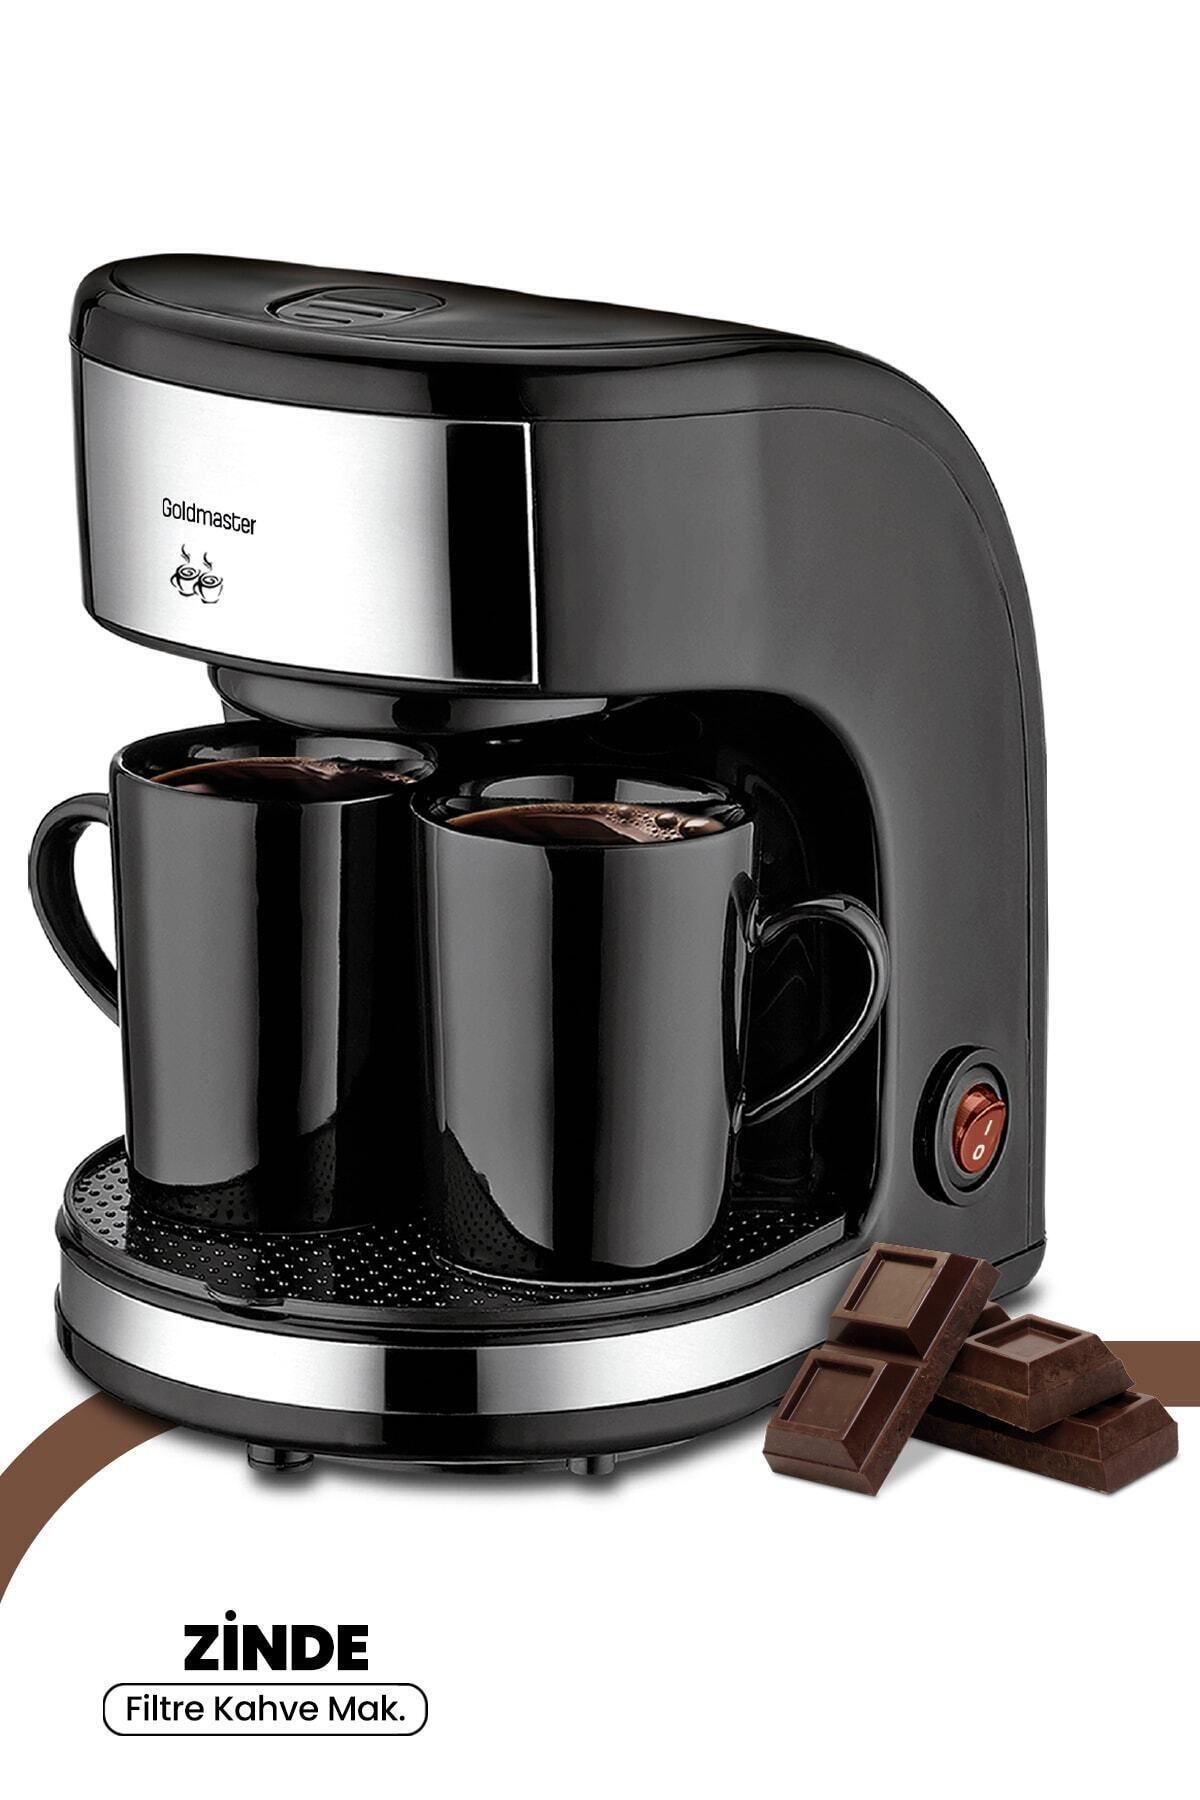 GoldMaster Zinde Yıkanabilir ve Temizlenebilir Filtreli Çift Kupalı Filtre Kahve Makinesi